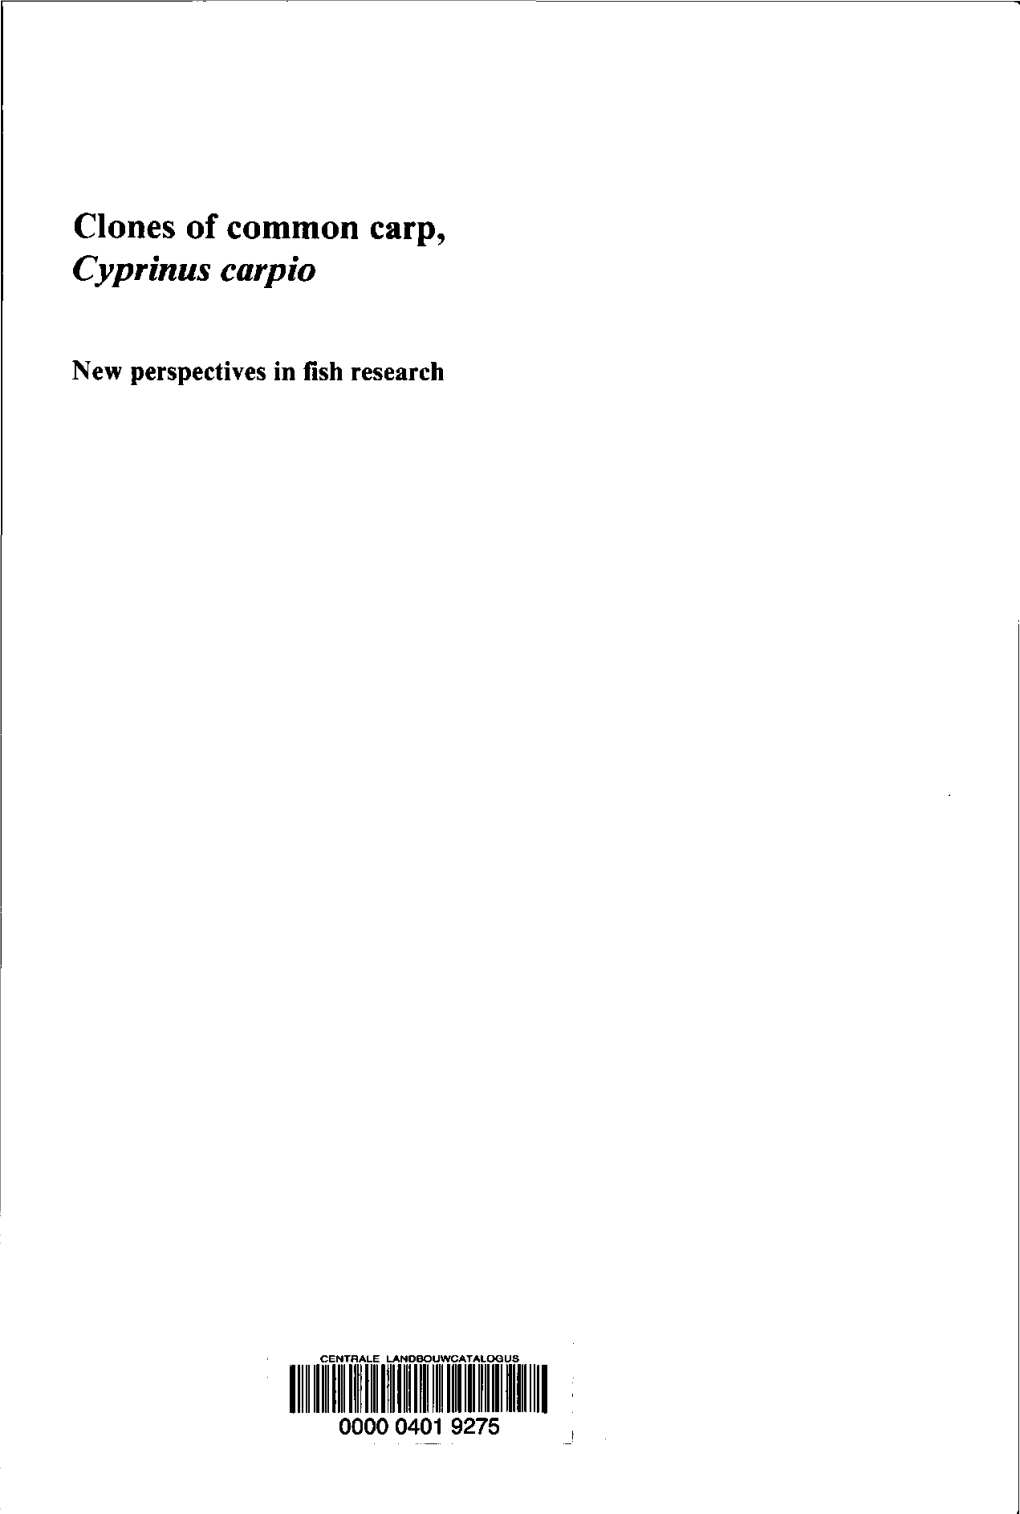 Clones of Common Carp, Cyprinus Carpio